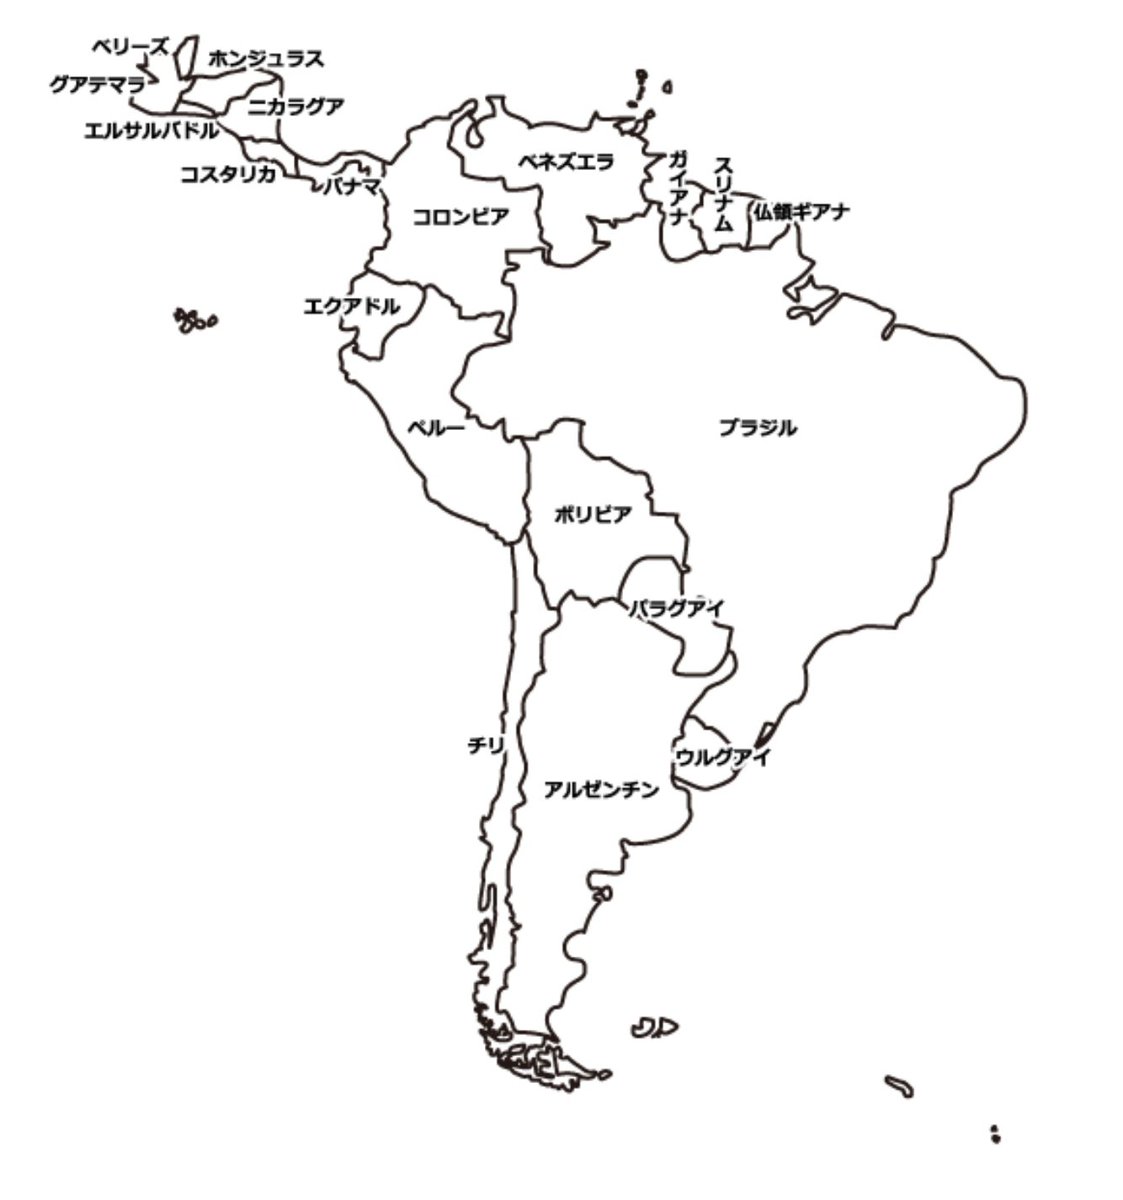 南米の国紹介するときにブラジルの隣と説明してますけど